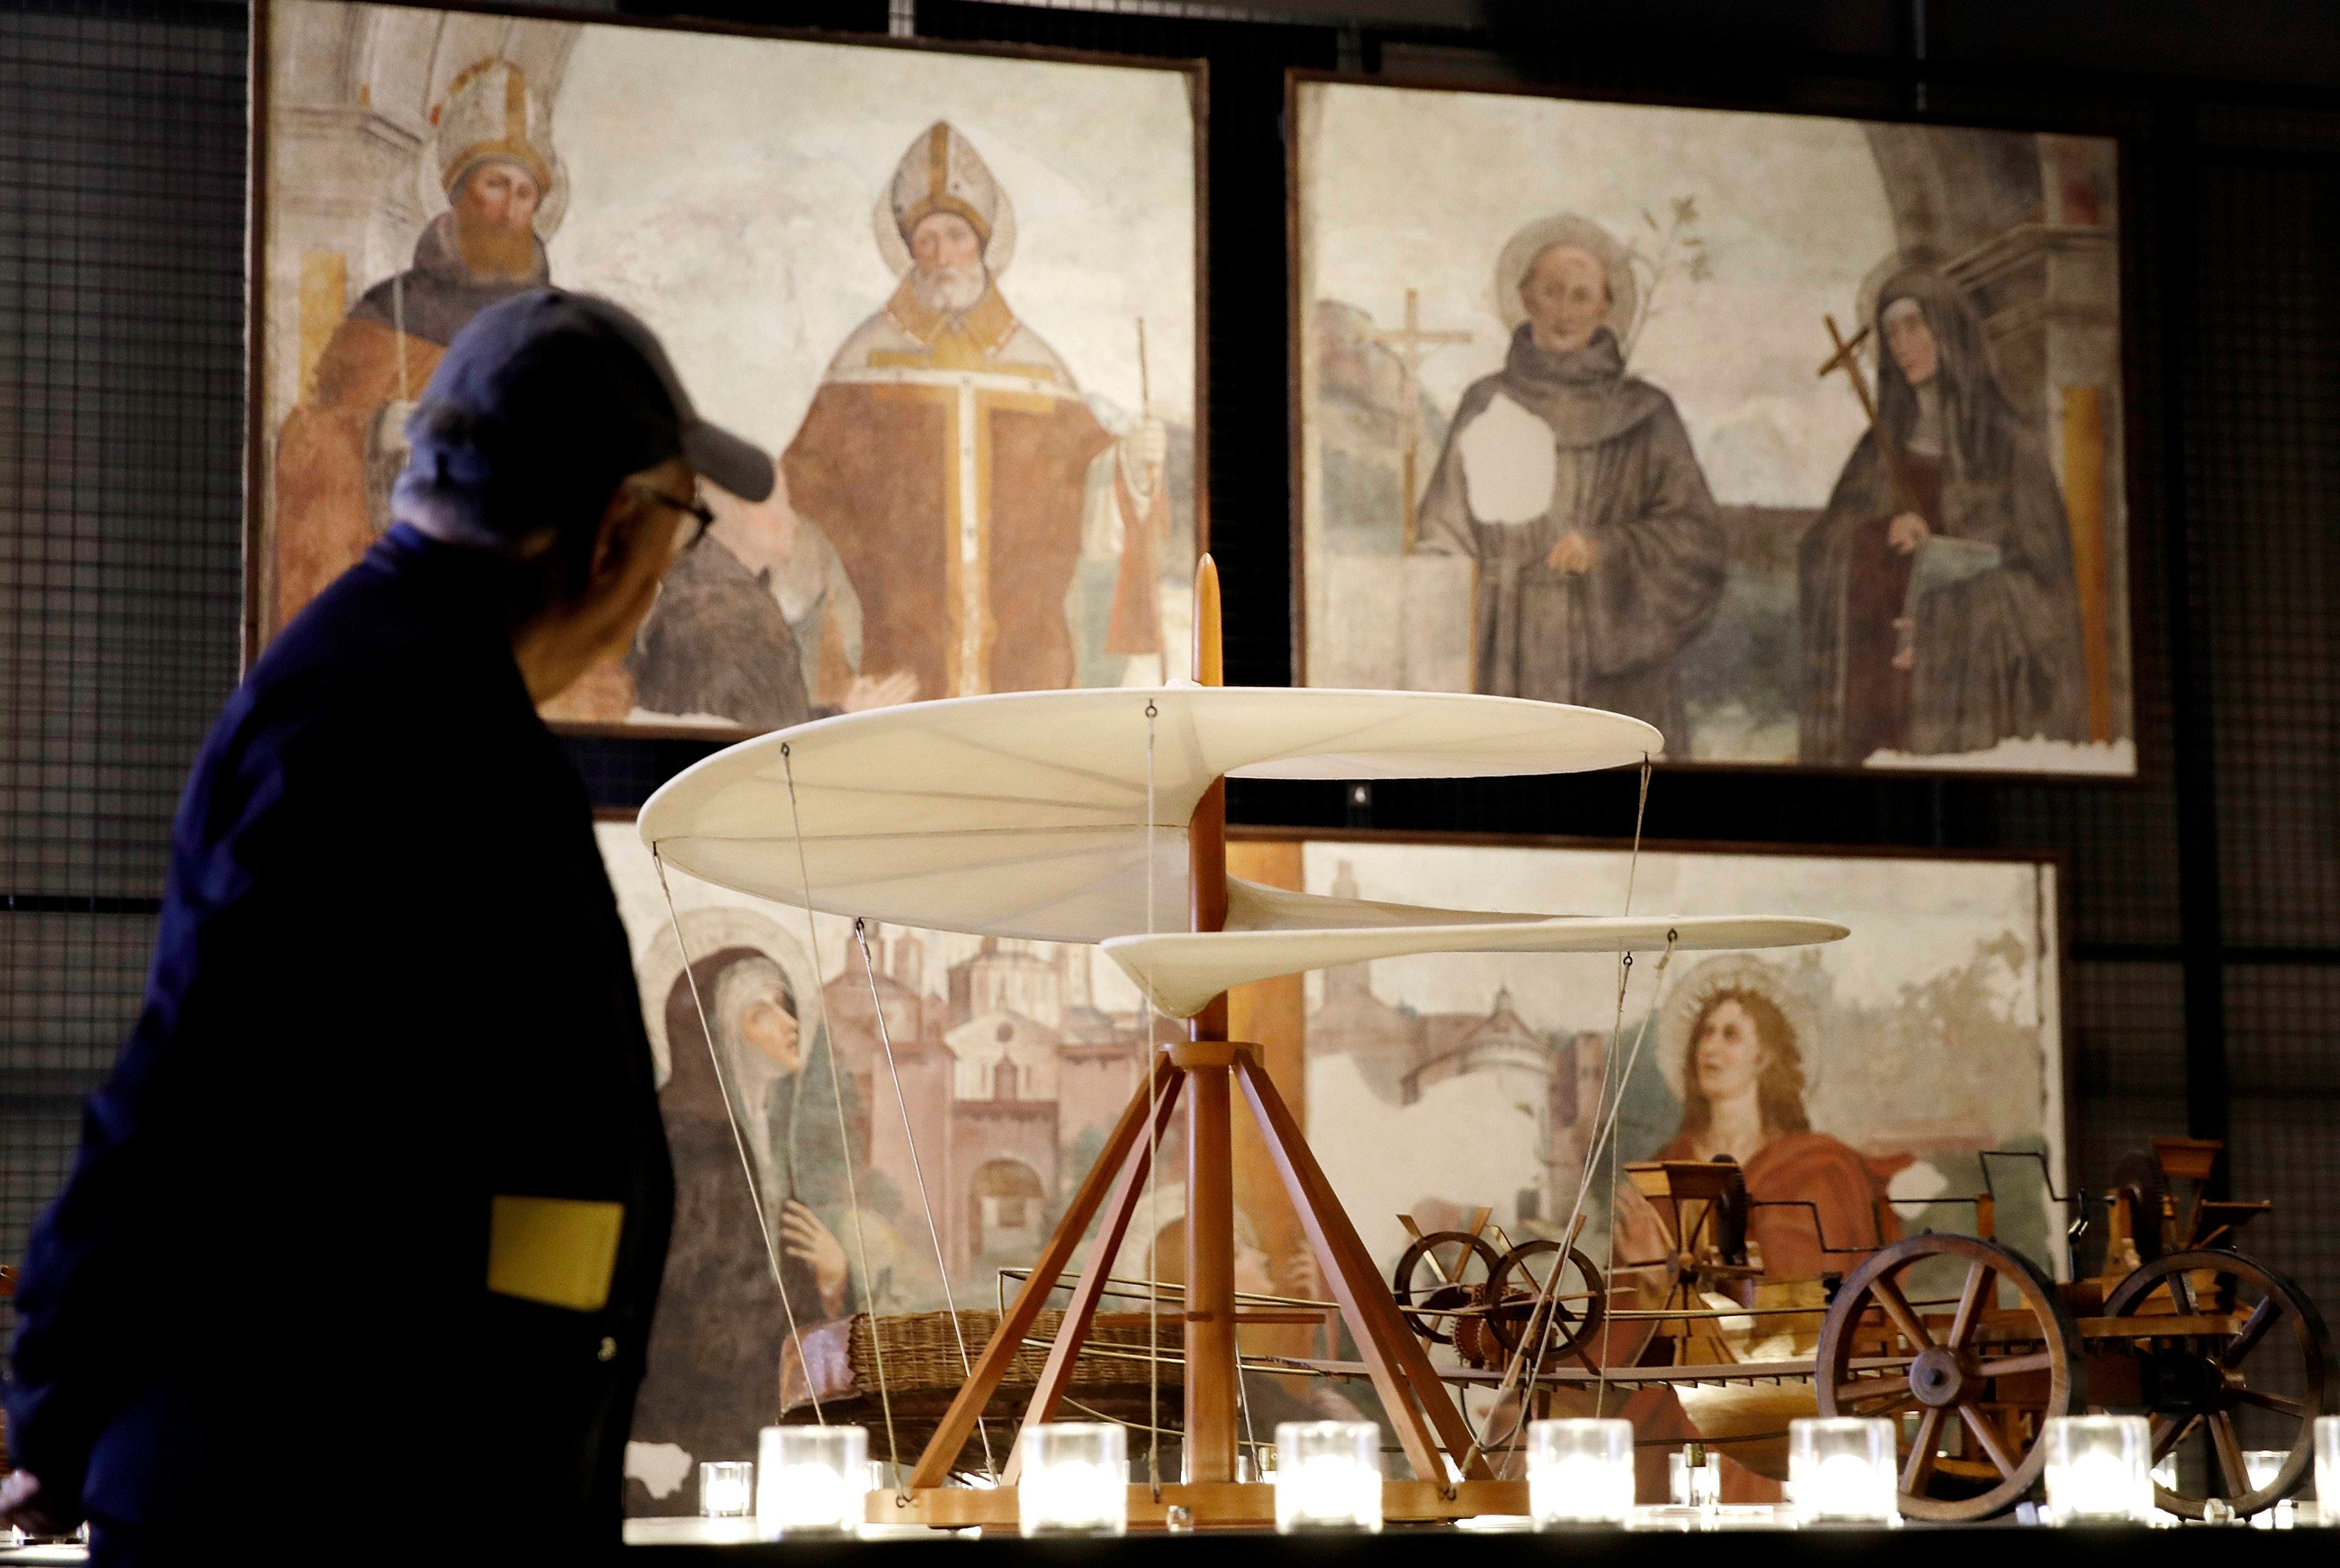 El legado de Da Vinci pervive en Francia 500 años después de su muerte